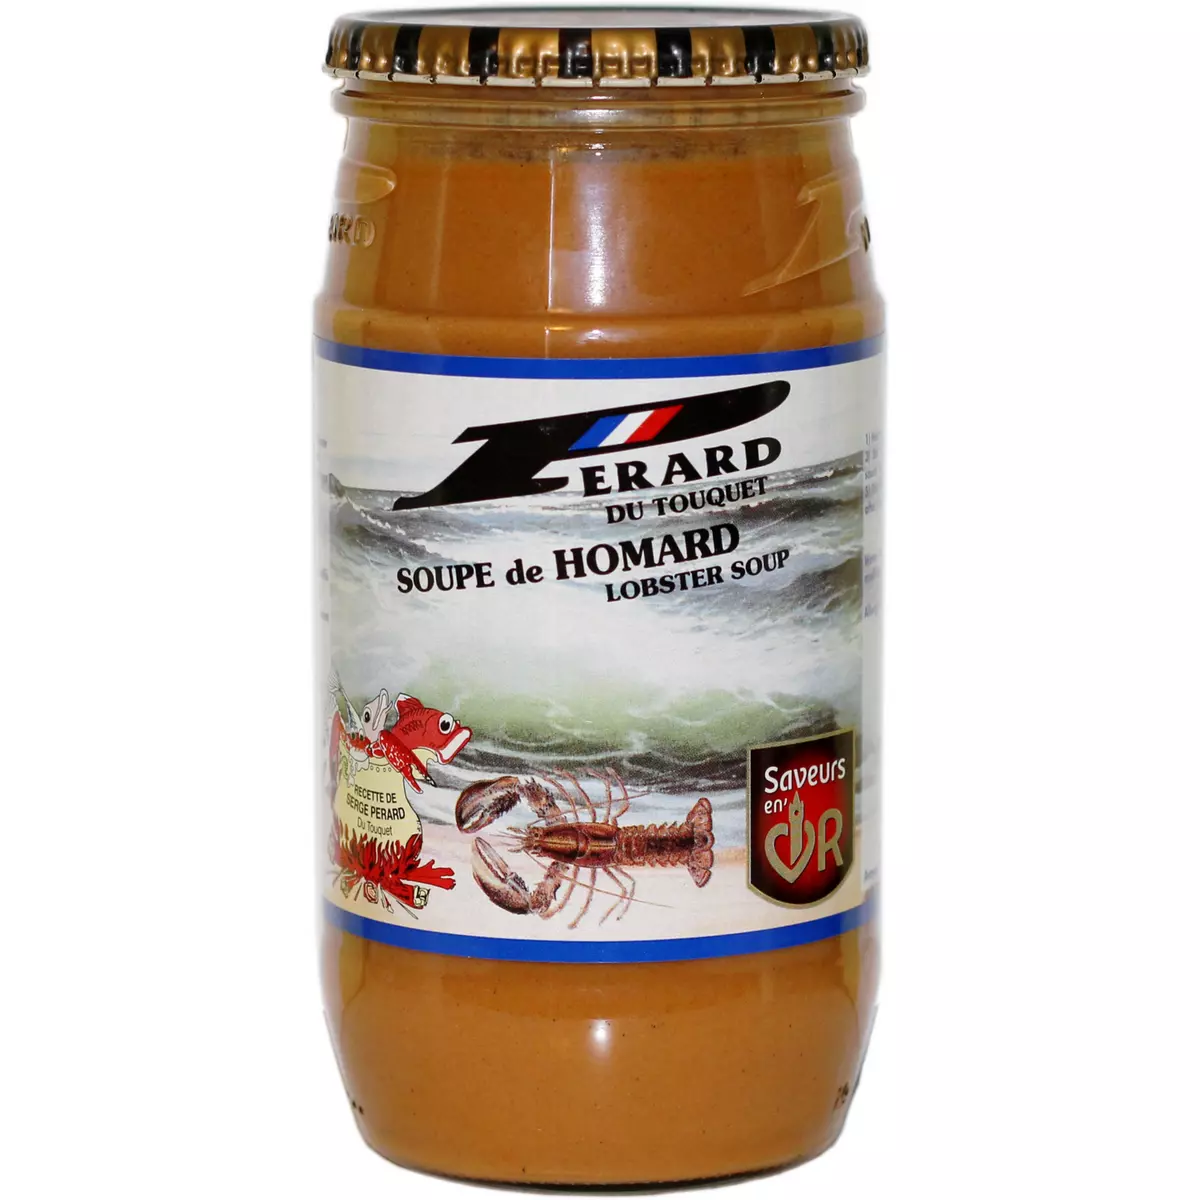 PERARD Soupe de homard du Touquet bocal 780g